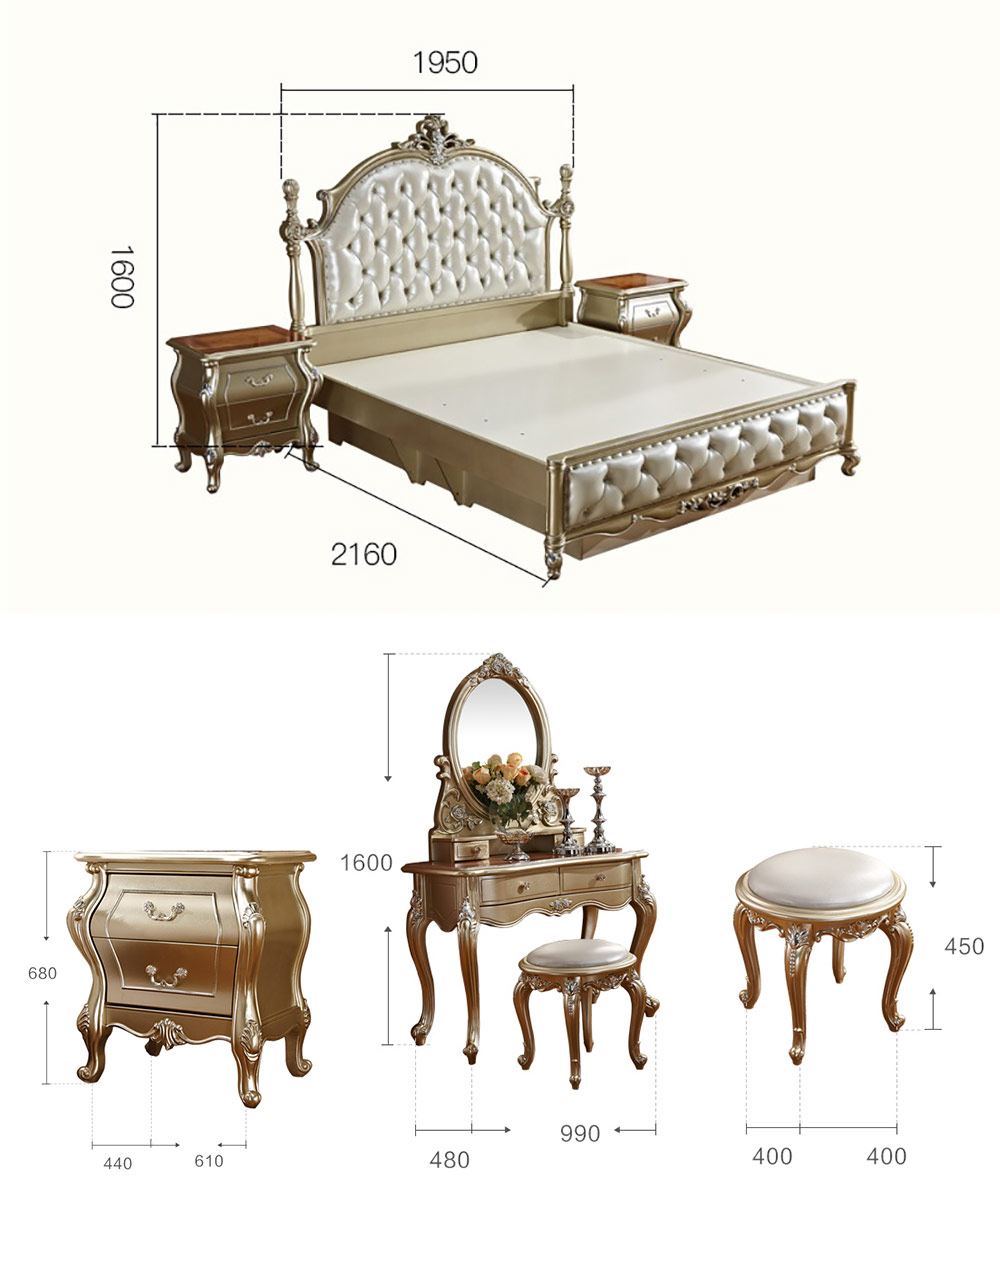 Bộ giường ngủ phong cách tân cổ điển Pháp G120